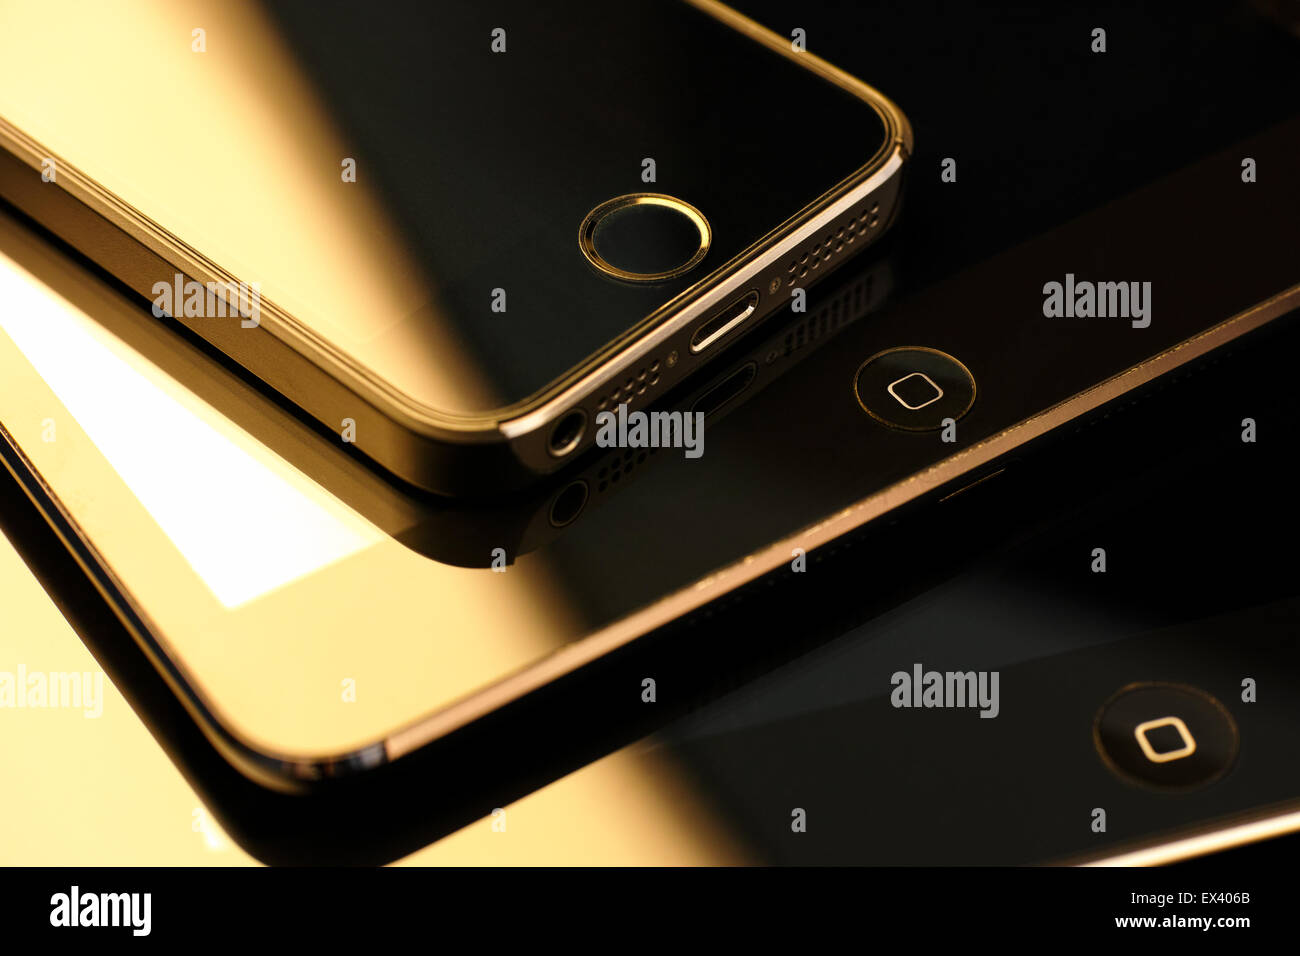 Tambov, Fédération de Russie - Février 26, 2015 Close up de pile d'appareils Apple, iPhone 5S, iPad mini et iPad 2. Banque D'Images